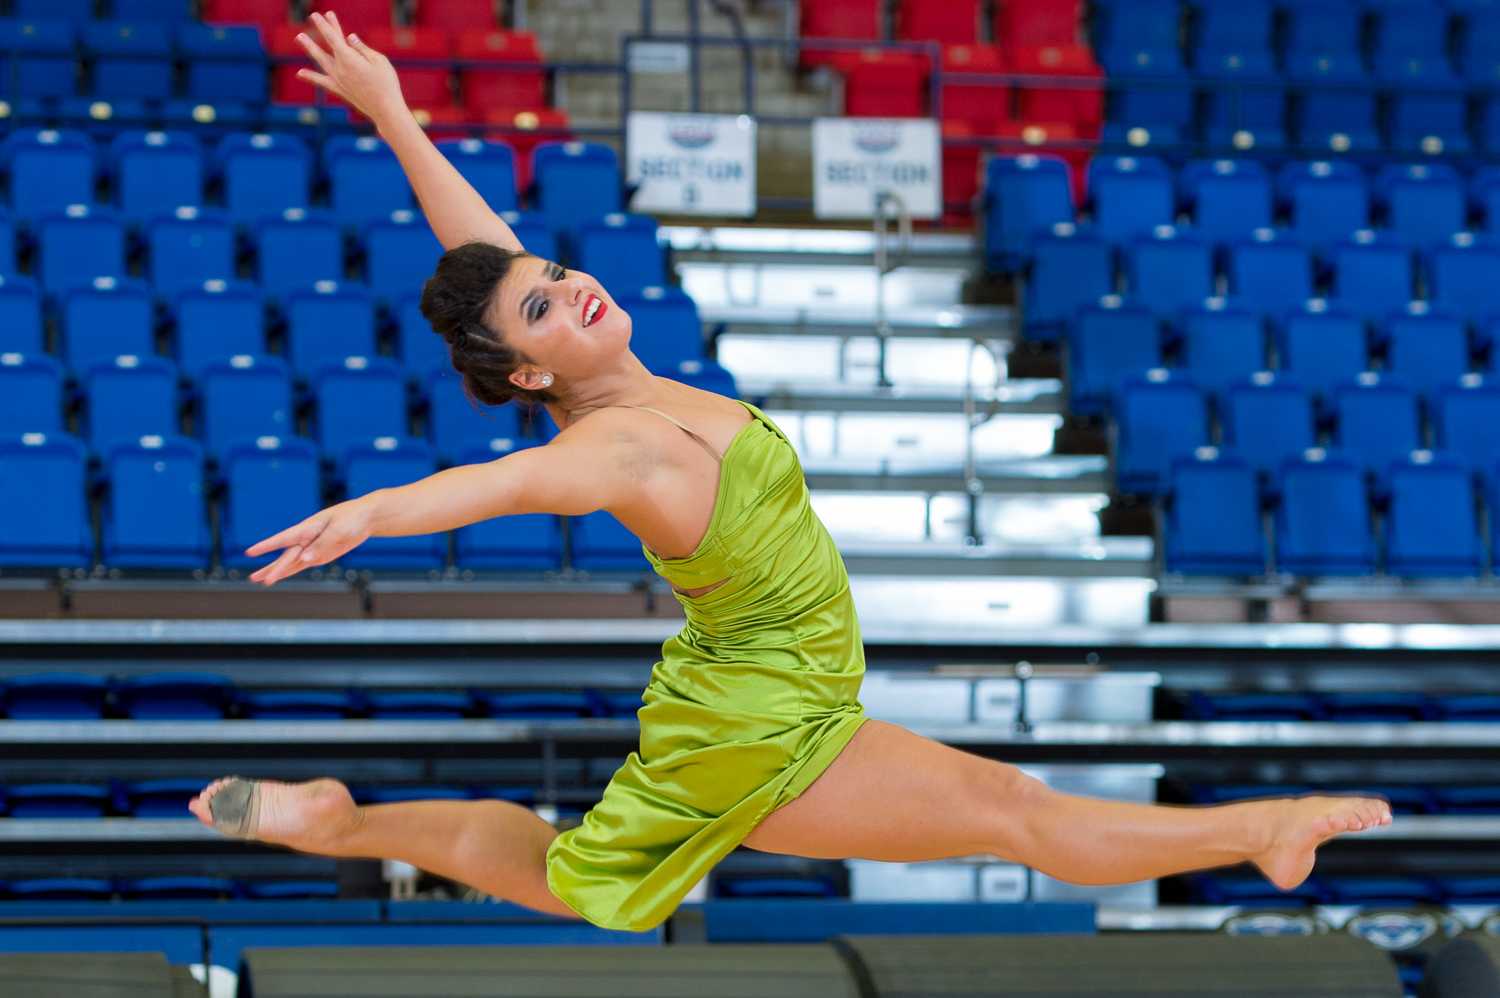 Alexa Lobosco, freshman on the dance team, performs at the 2015 FAU Dance Team Showcase.